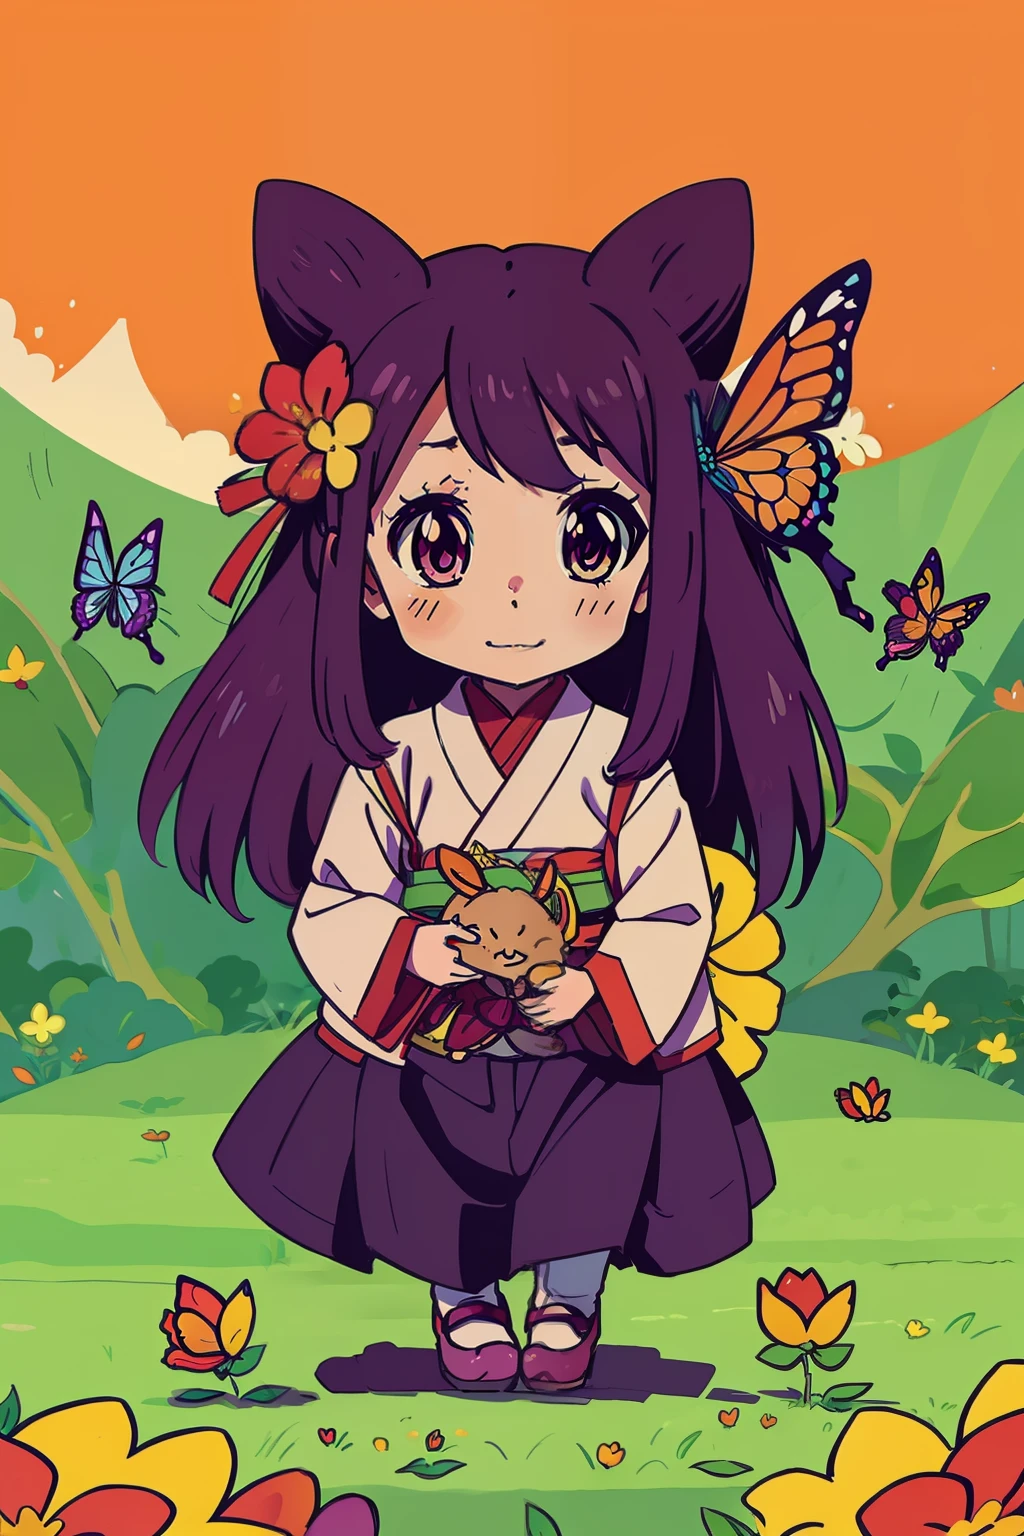  Reiko , felicidad , Inspiración del anime: a 5,Un dragón herbívoro de 000 años está siendo injustamente malvado, bosque , flor , mariposa a todo color